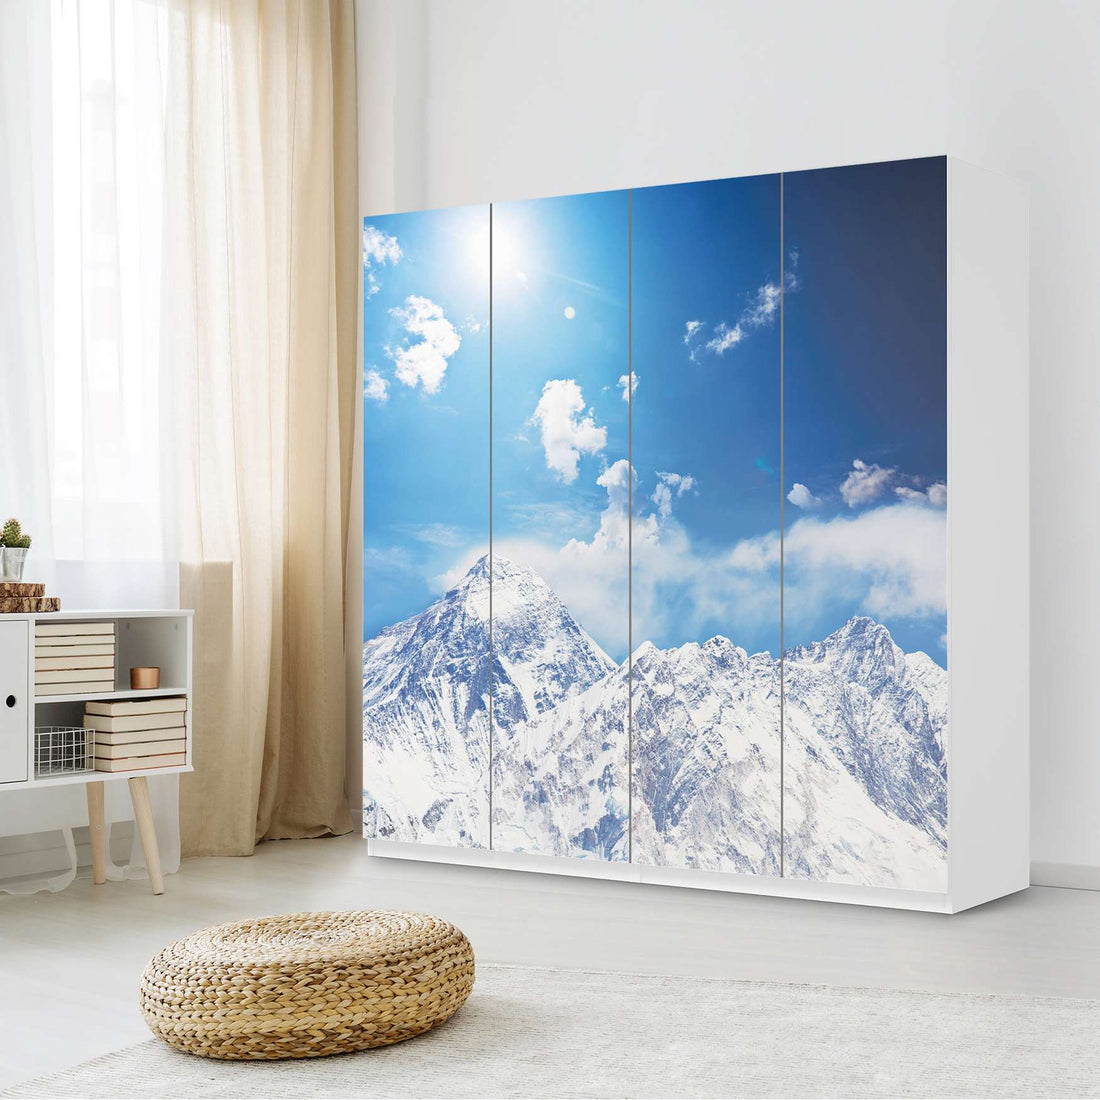 Klebefolie für Schränke Everest - IKEA Pax Schrank 201 cm Höhe - 4 Türen - Schlafzimmer